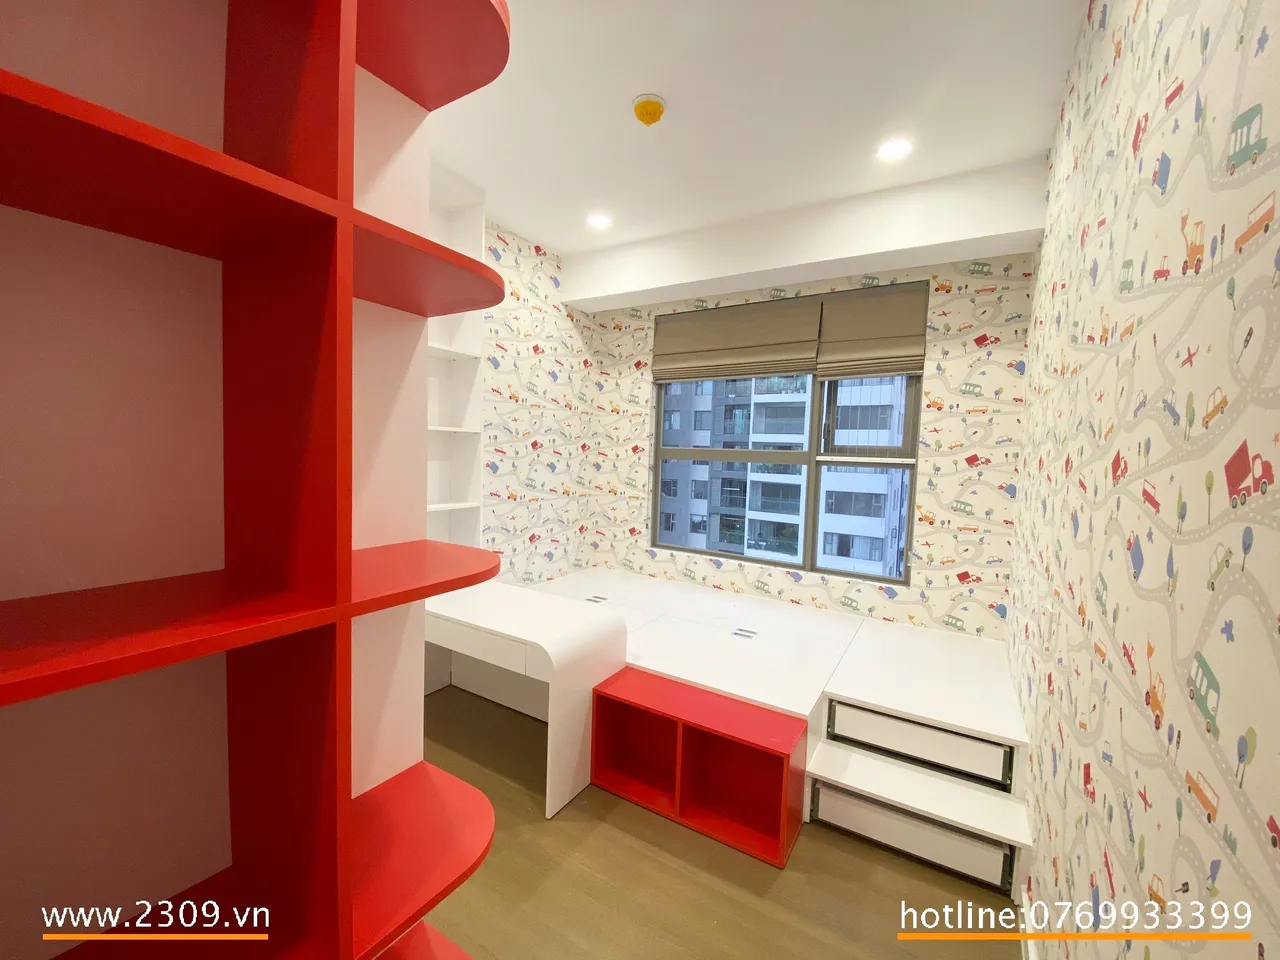 Hoàn thiện nội thất phòng ngủ cho bé Căn hộ Đường Nguyễn Hữu Thọ Quận 7 phong cách hiện đại Modern